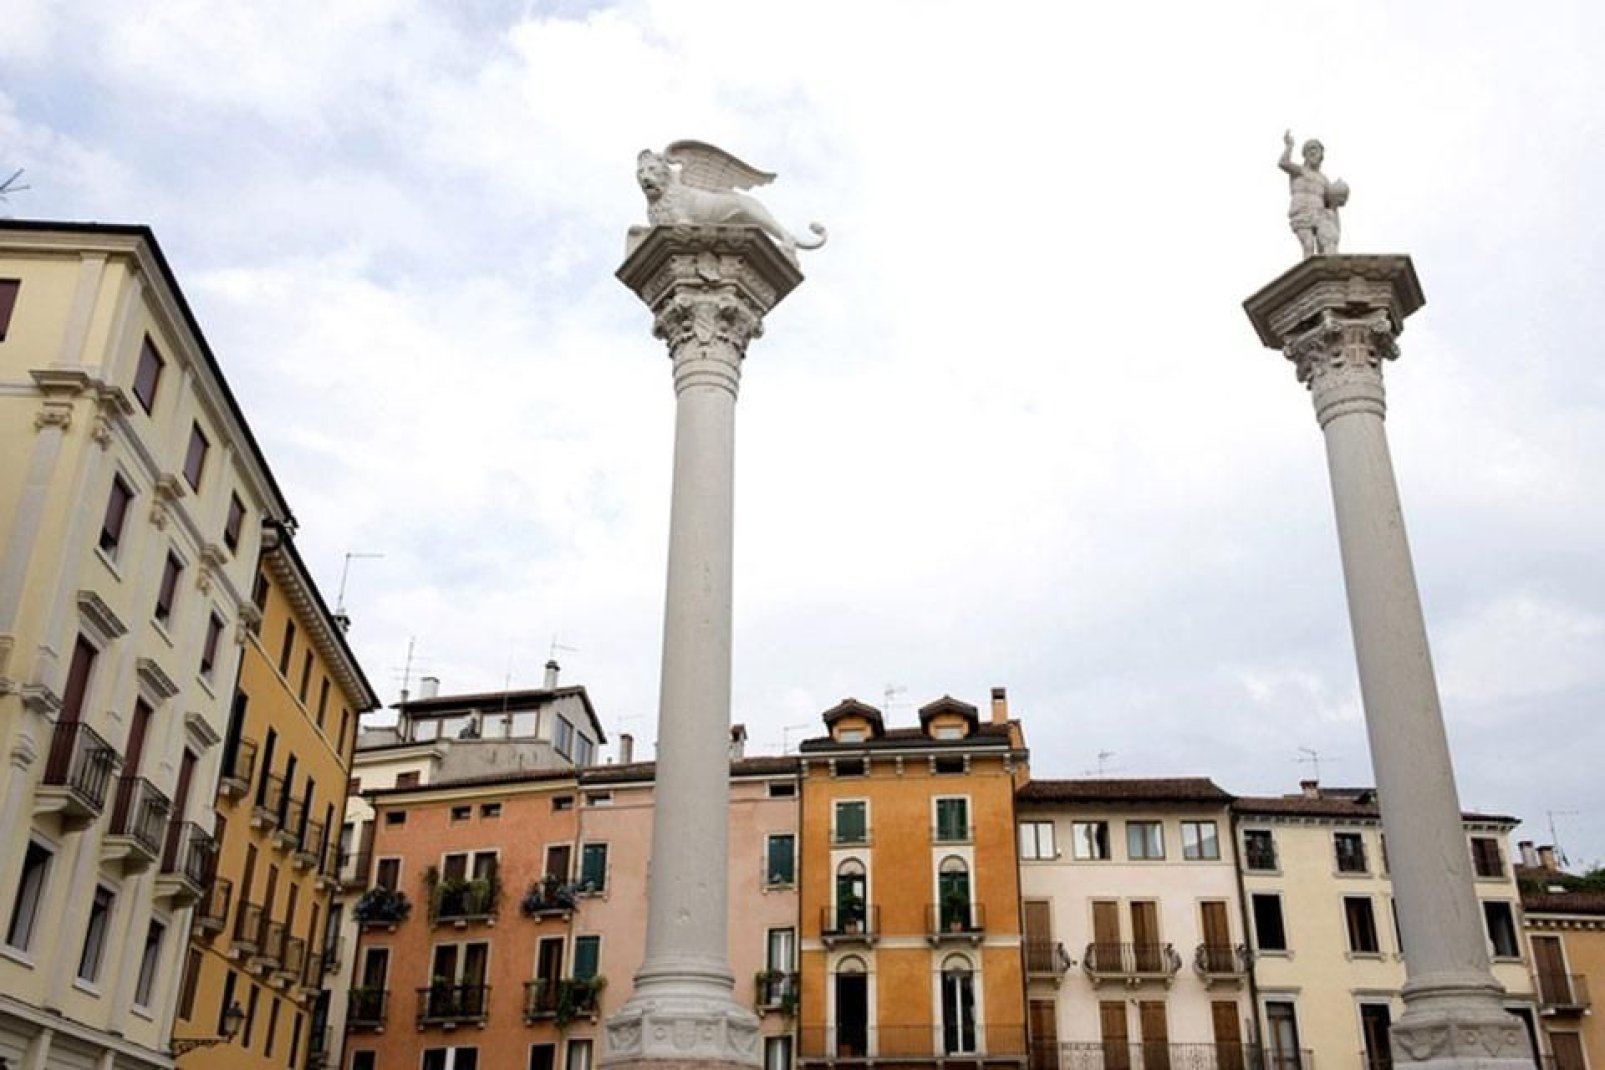 Detailansicht des Piazza dei Signori in Vicenza, auf der zwei Säulen stehen, wobei eine den Löwen von St. Markus und die andere den Erlöser trägt.